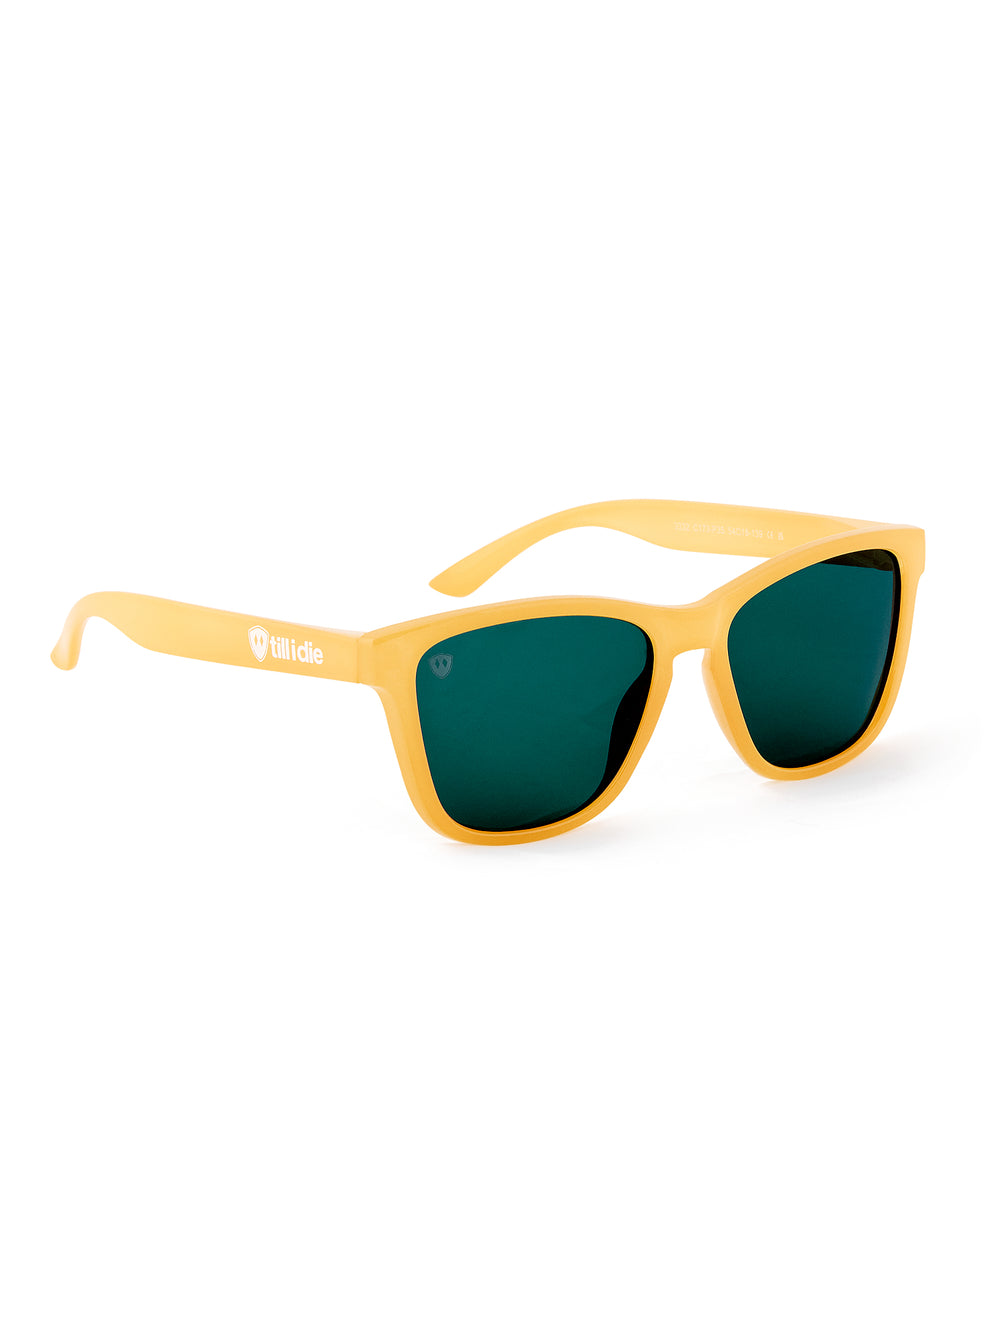 Mango Mermaid // Polarized Sunglasses // Yellow + Bluish Green